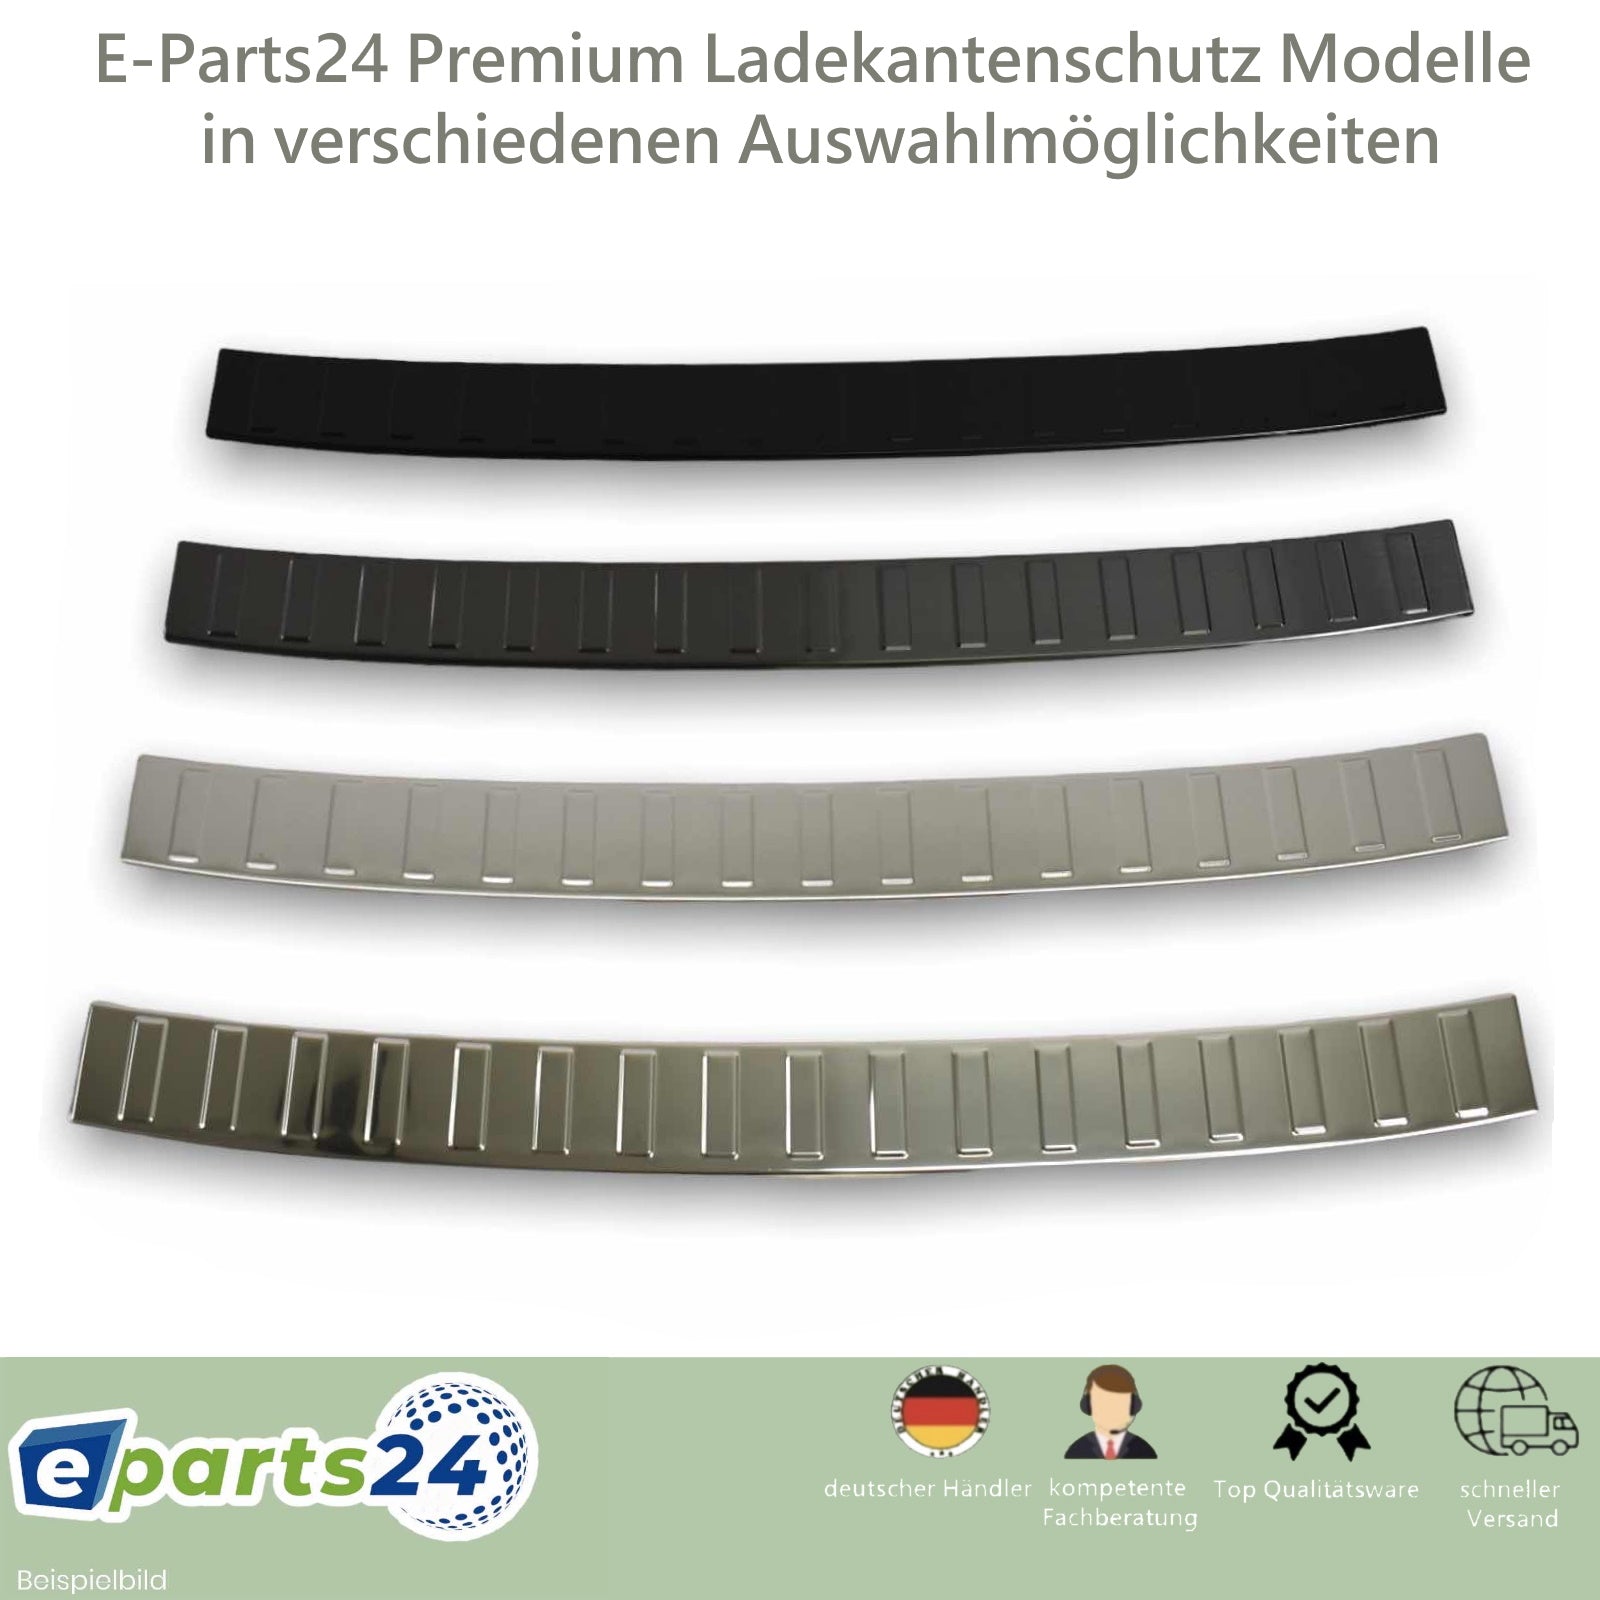 Ladekantenschutz Heckschutz für BMW G01 – X3 E-Parts24 2017-2021 Edelstahl F97 gla